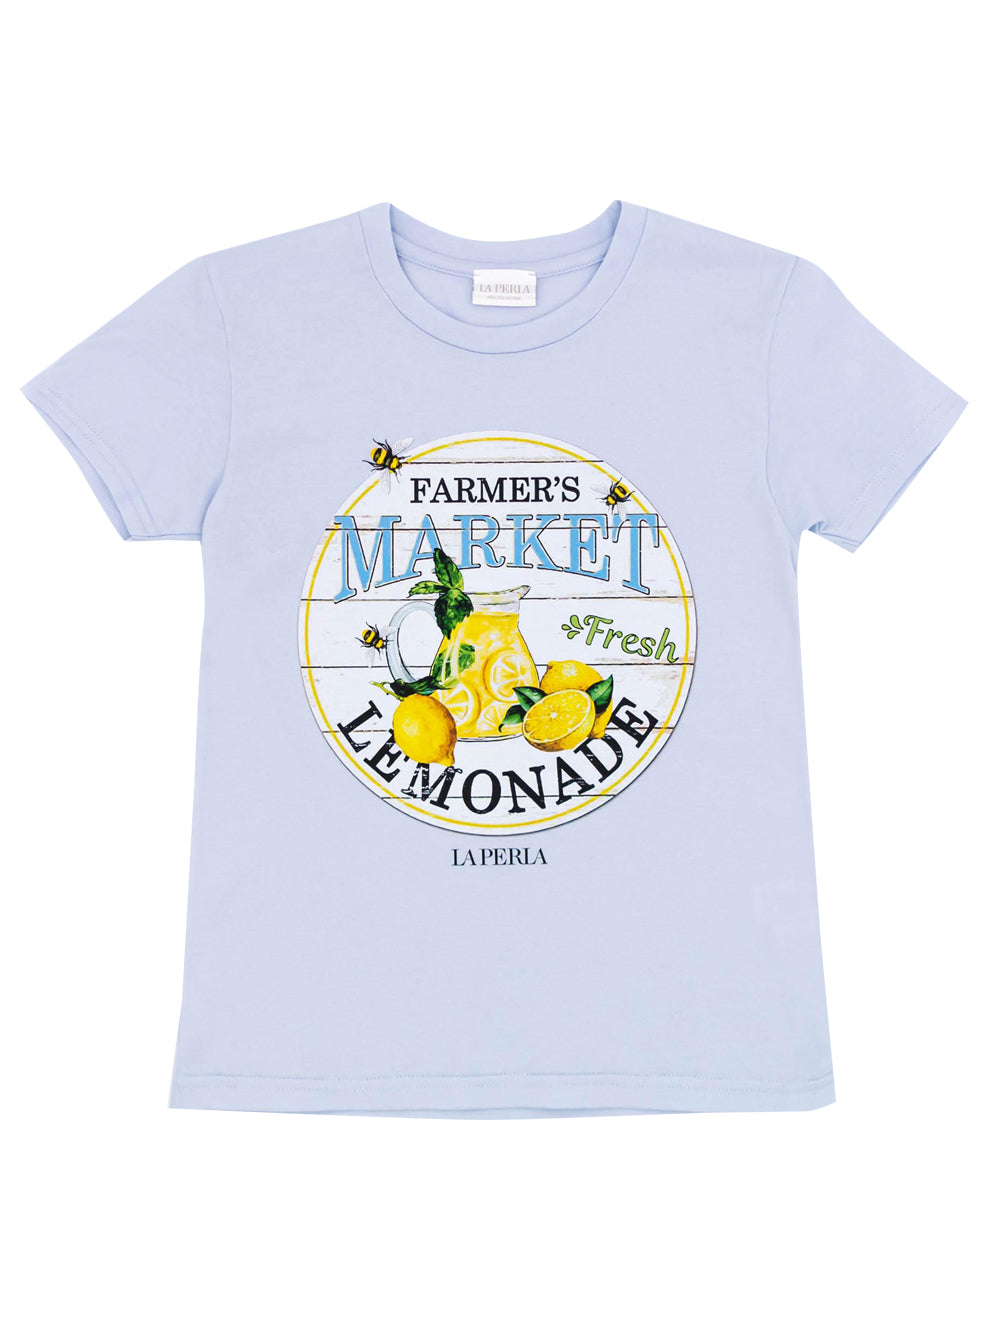 Lemonade T-Shirt